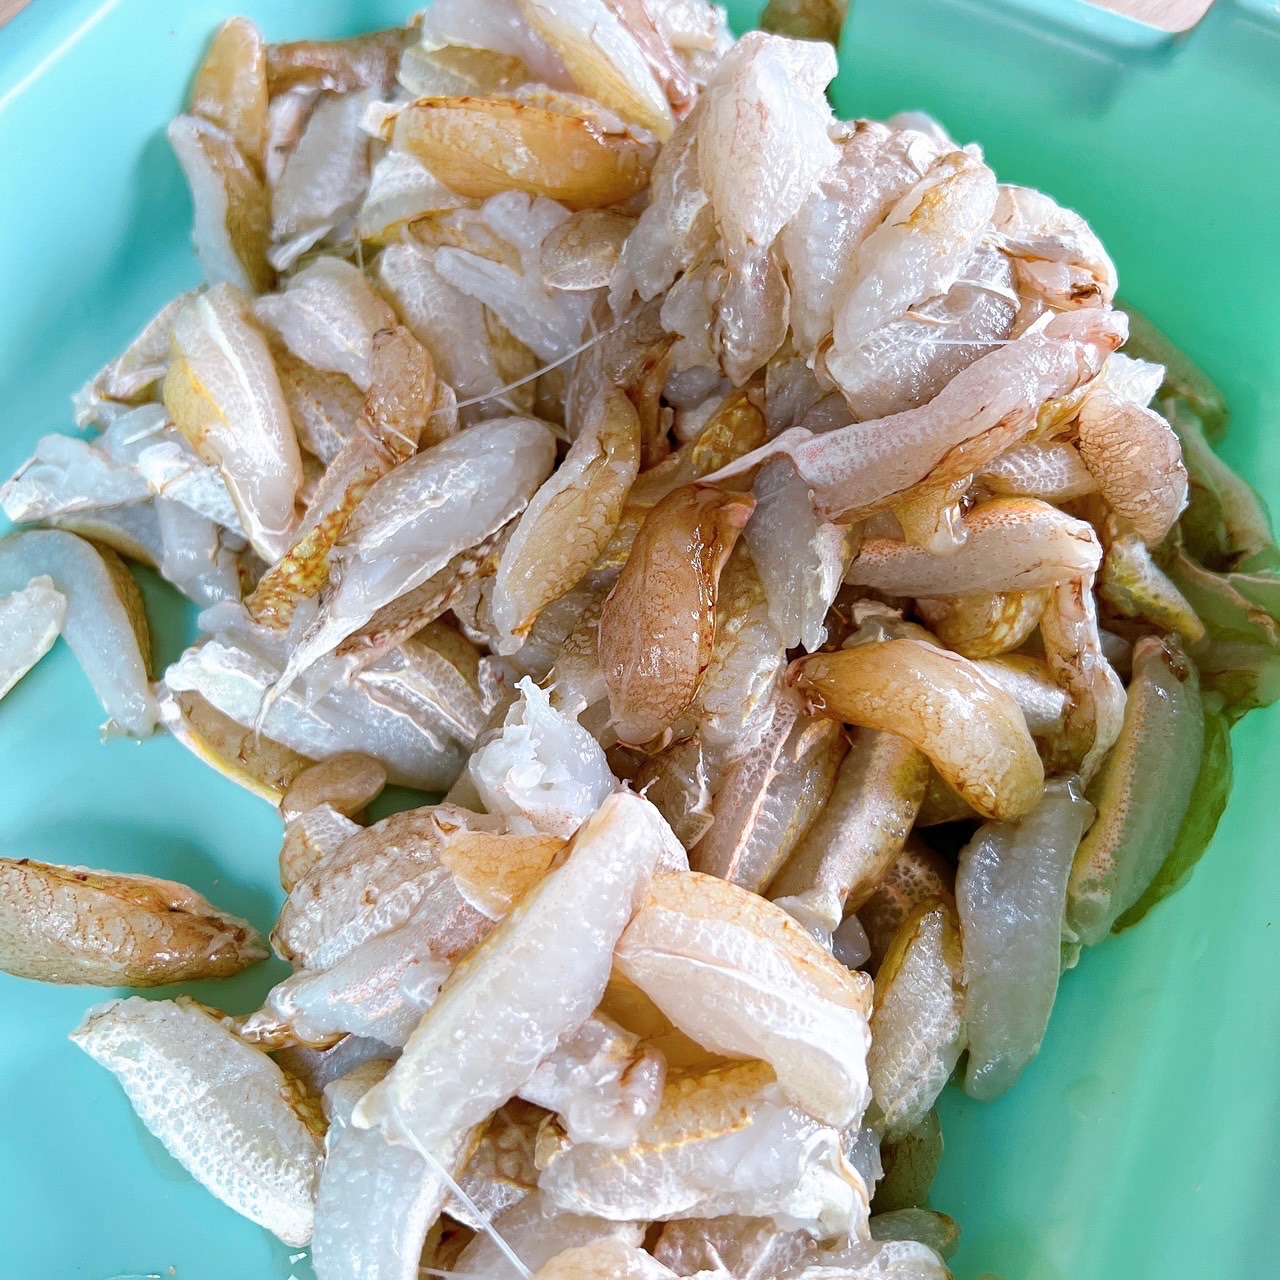 澎湖扁蟹的蟹腳肉